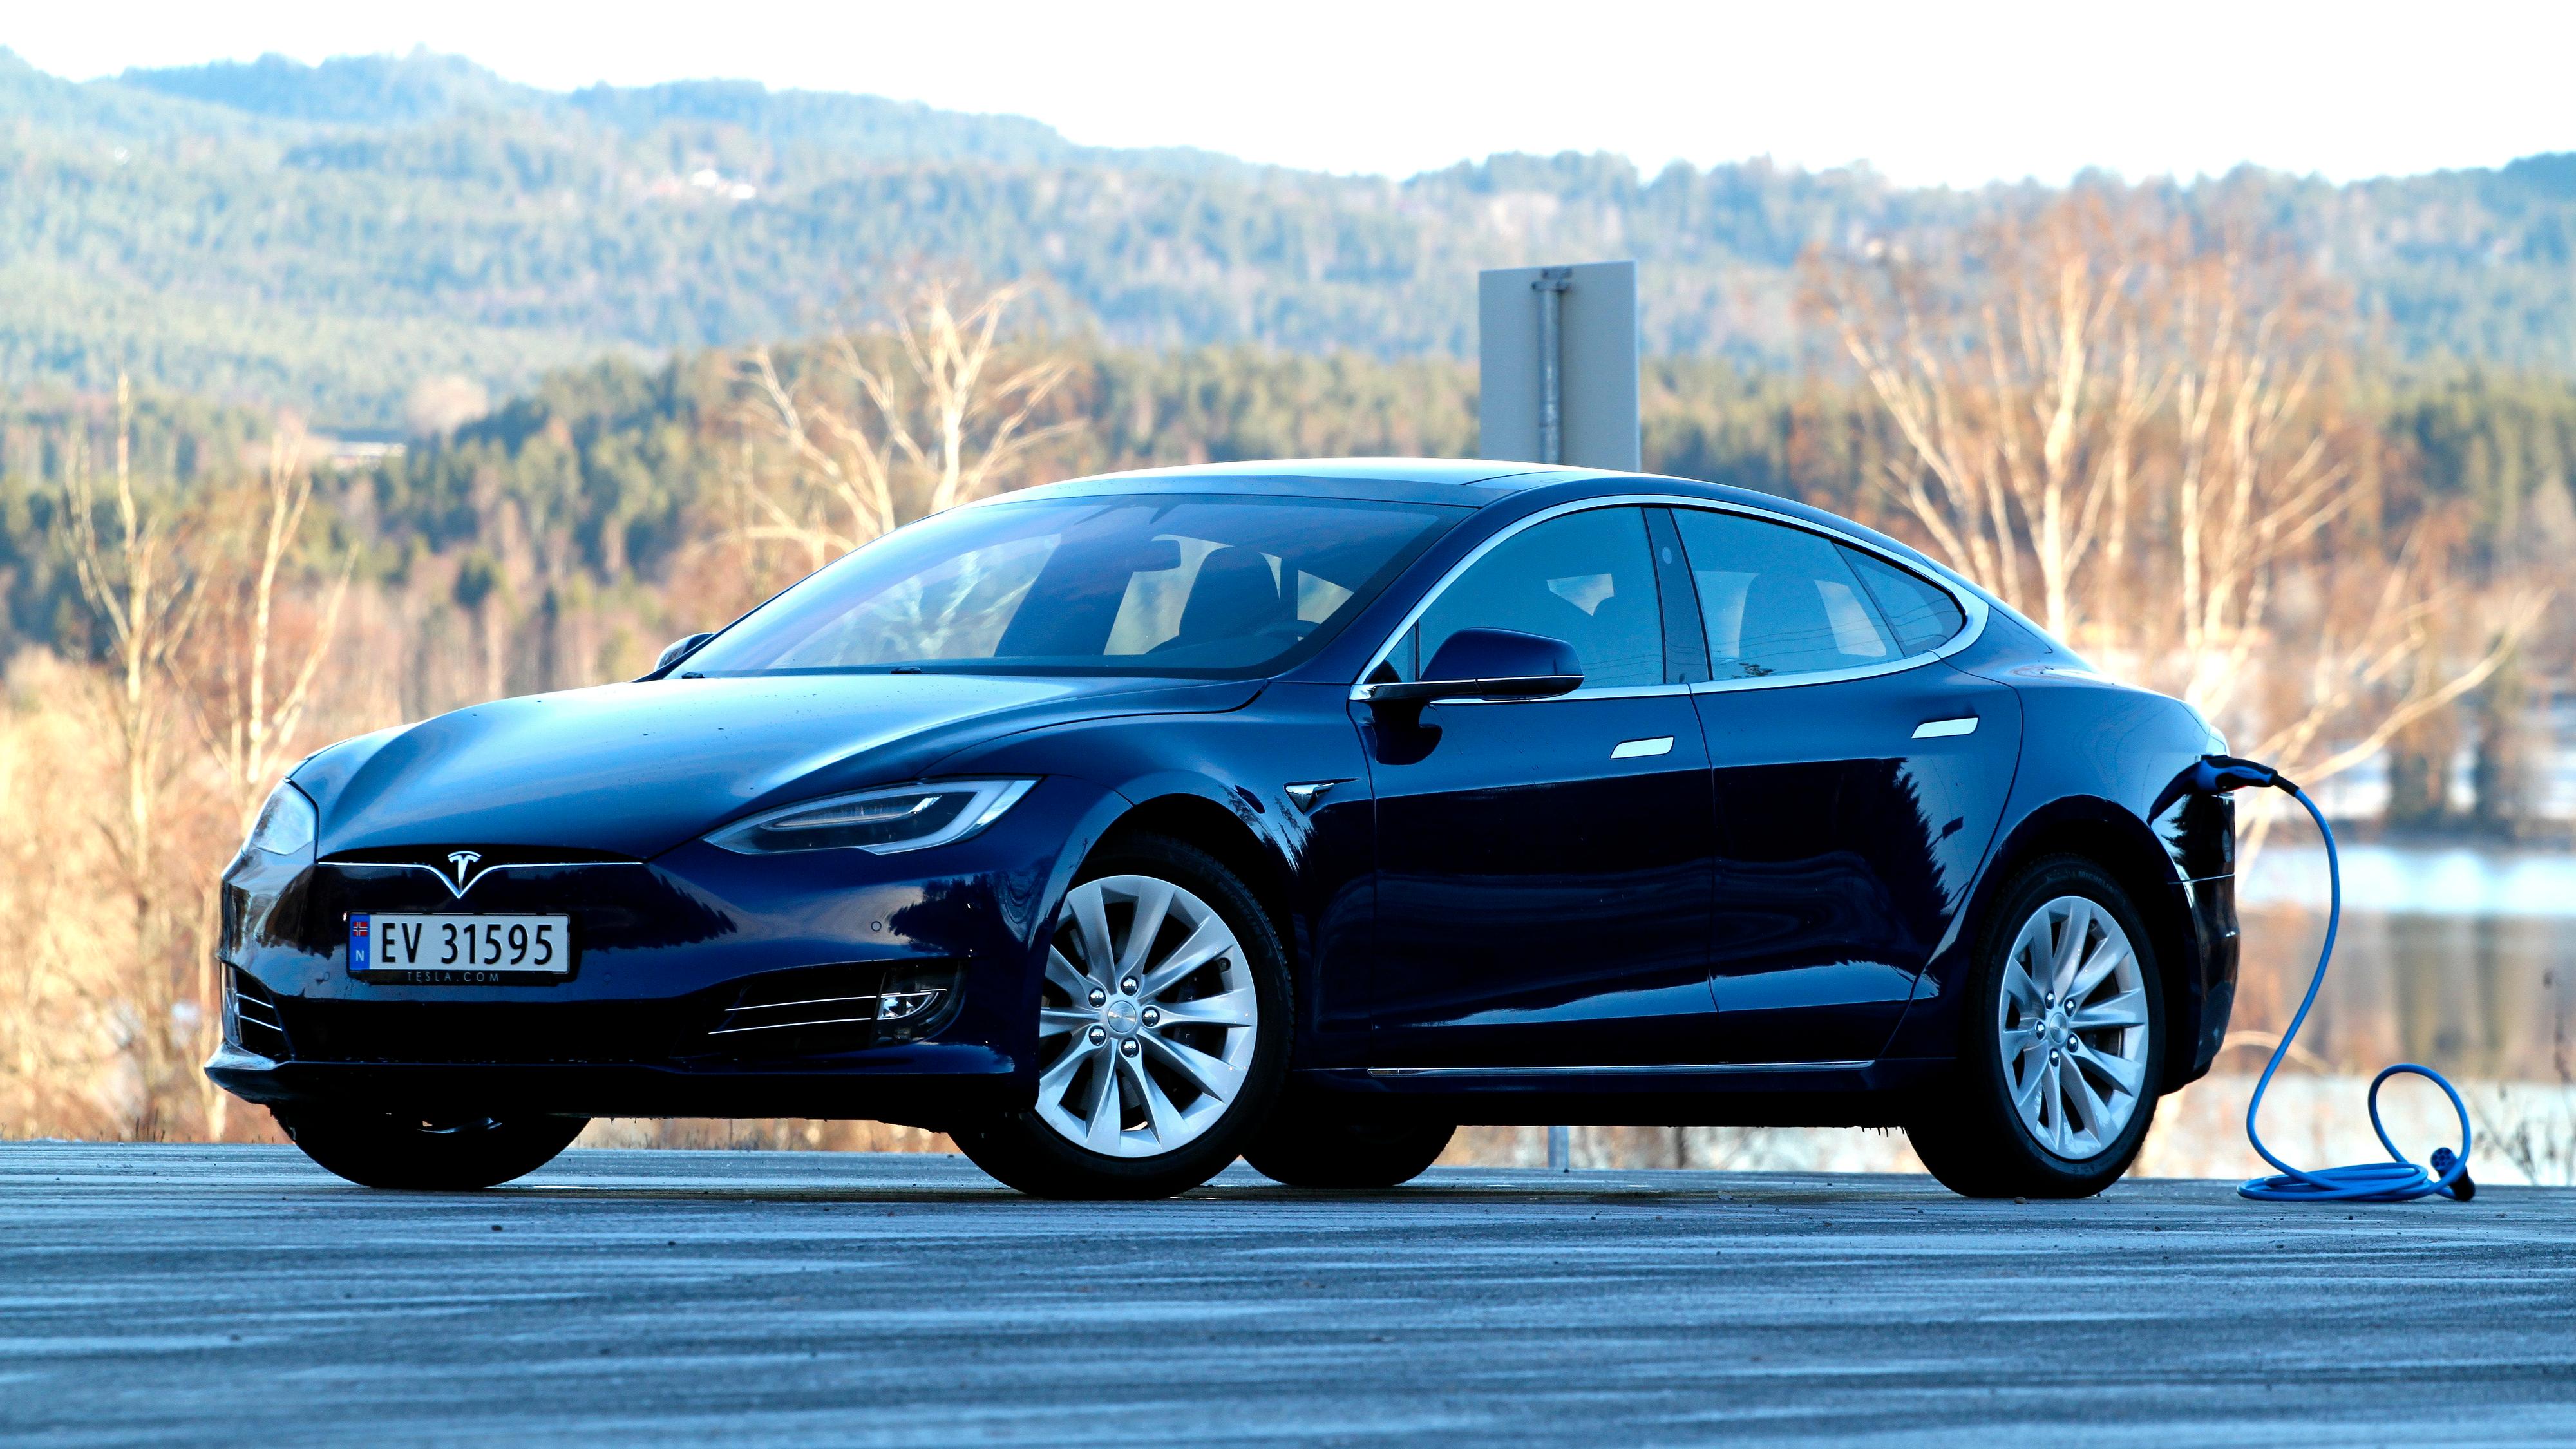 Ludicrous-modusen er ikke lenger inkludert for norske Tesla-kunder